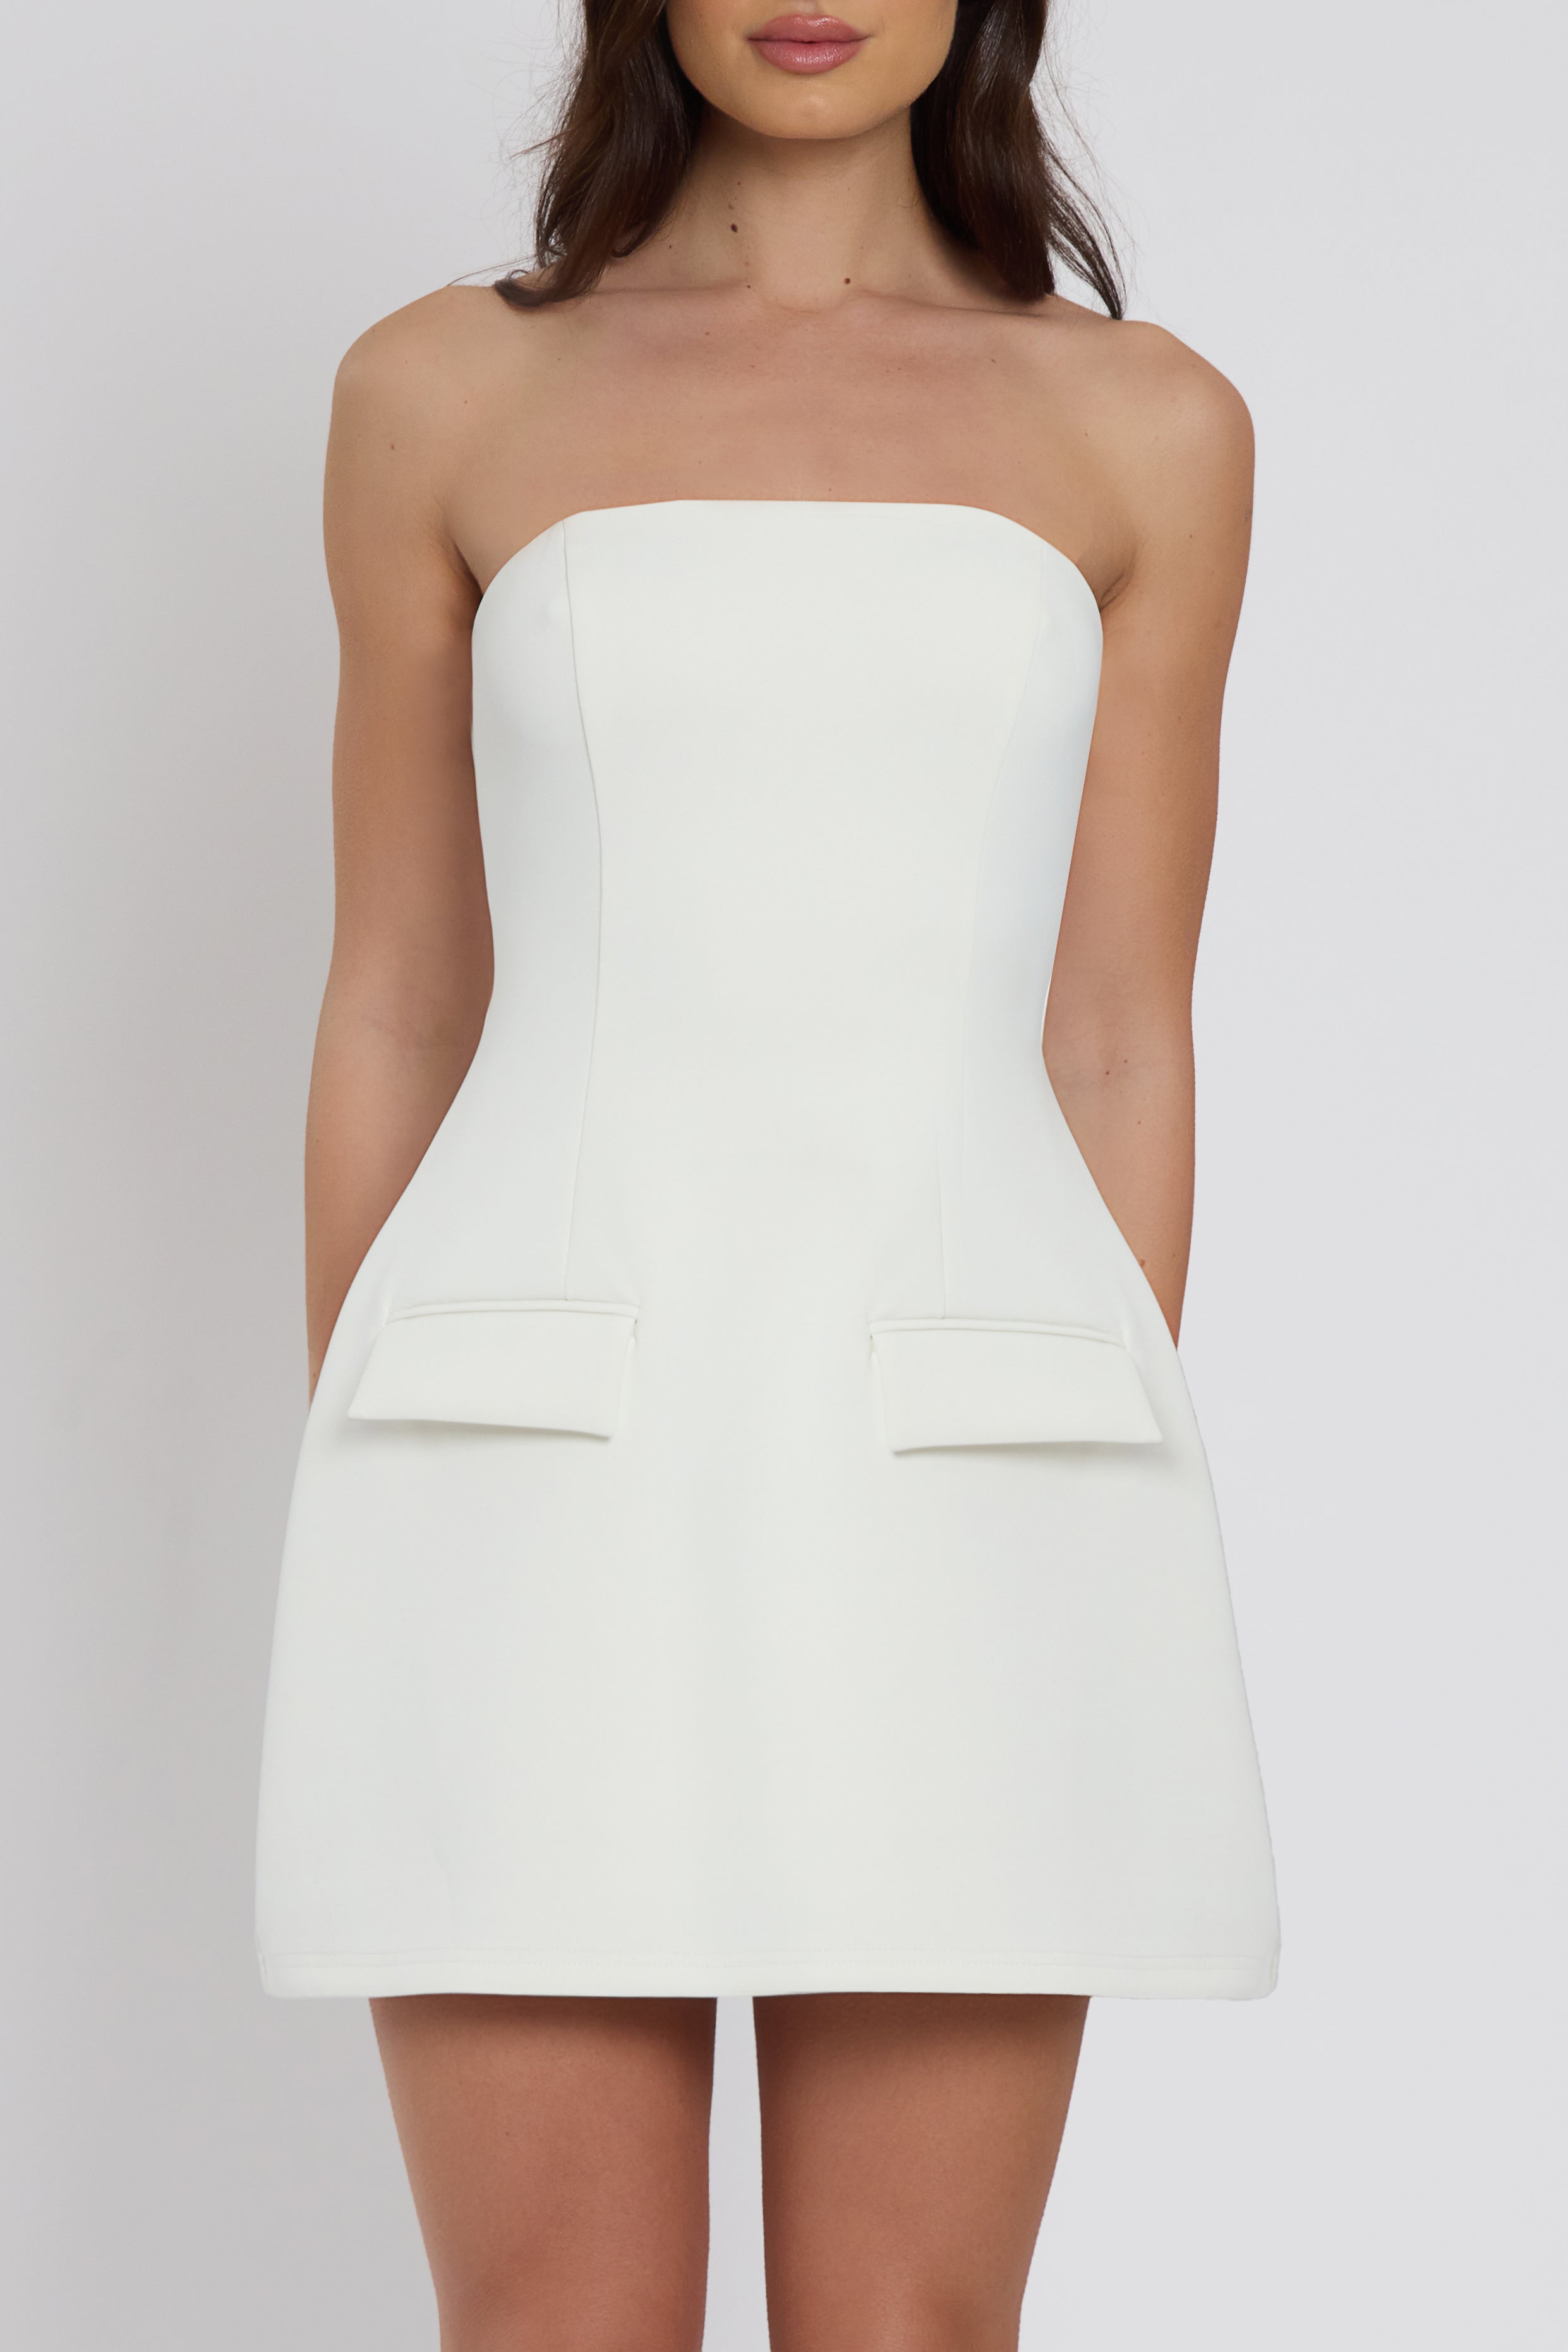 Solene Strapless Pocket Mini Dress - White.